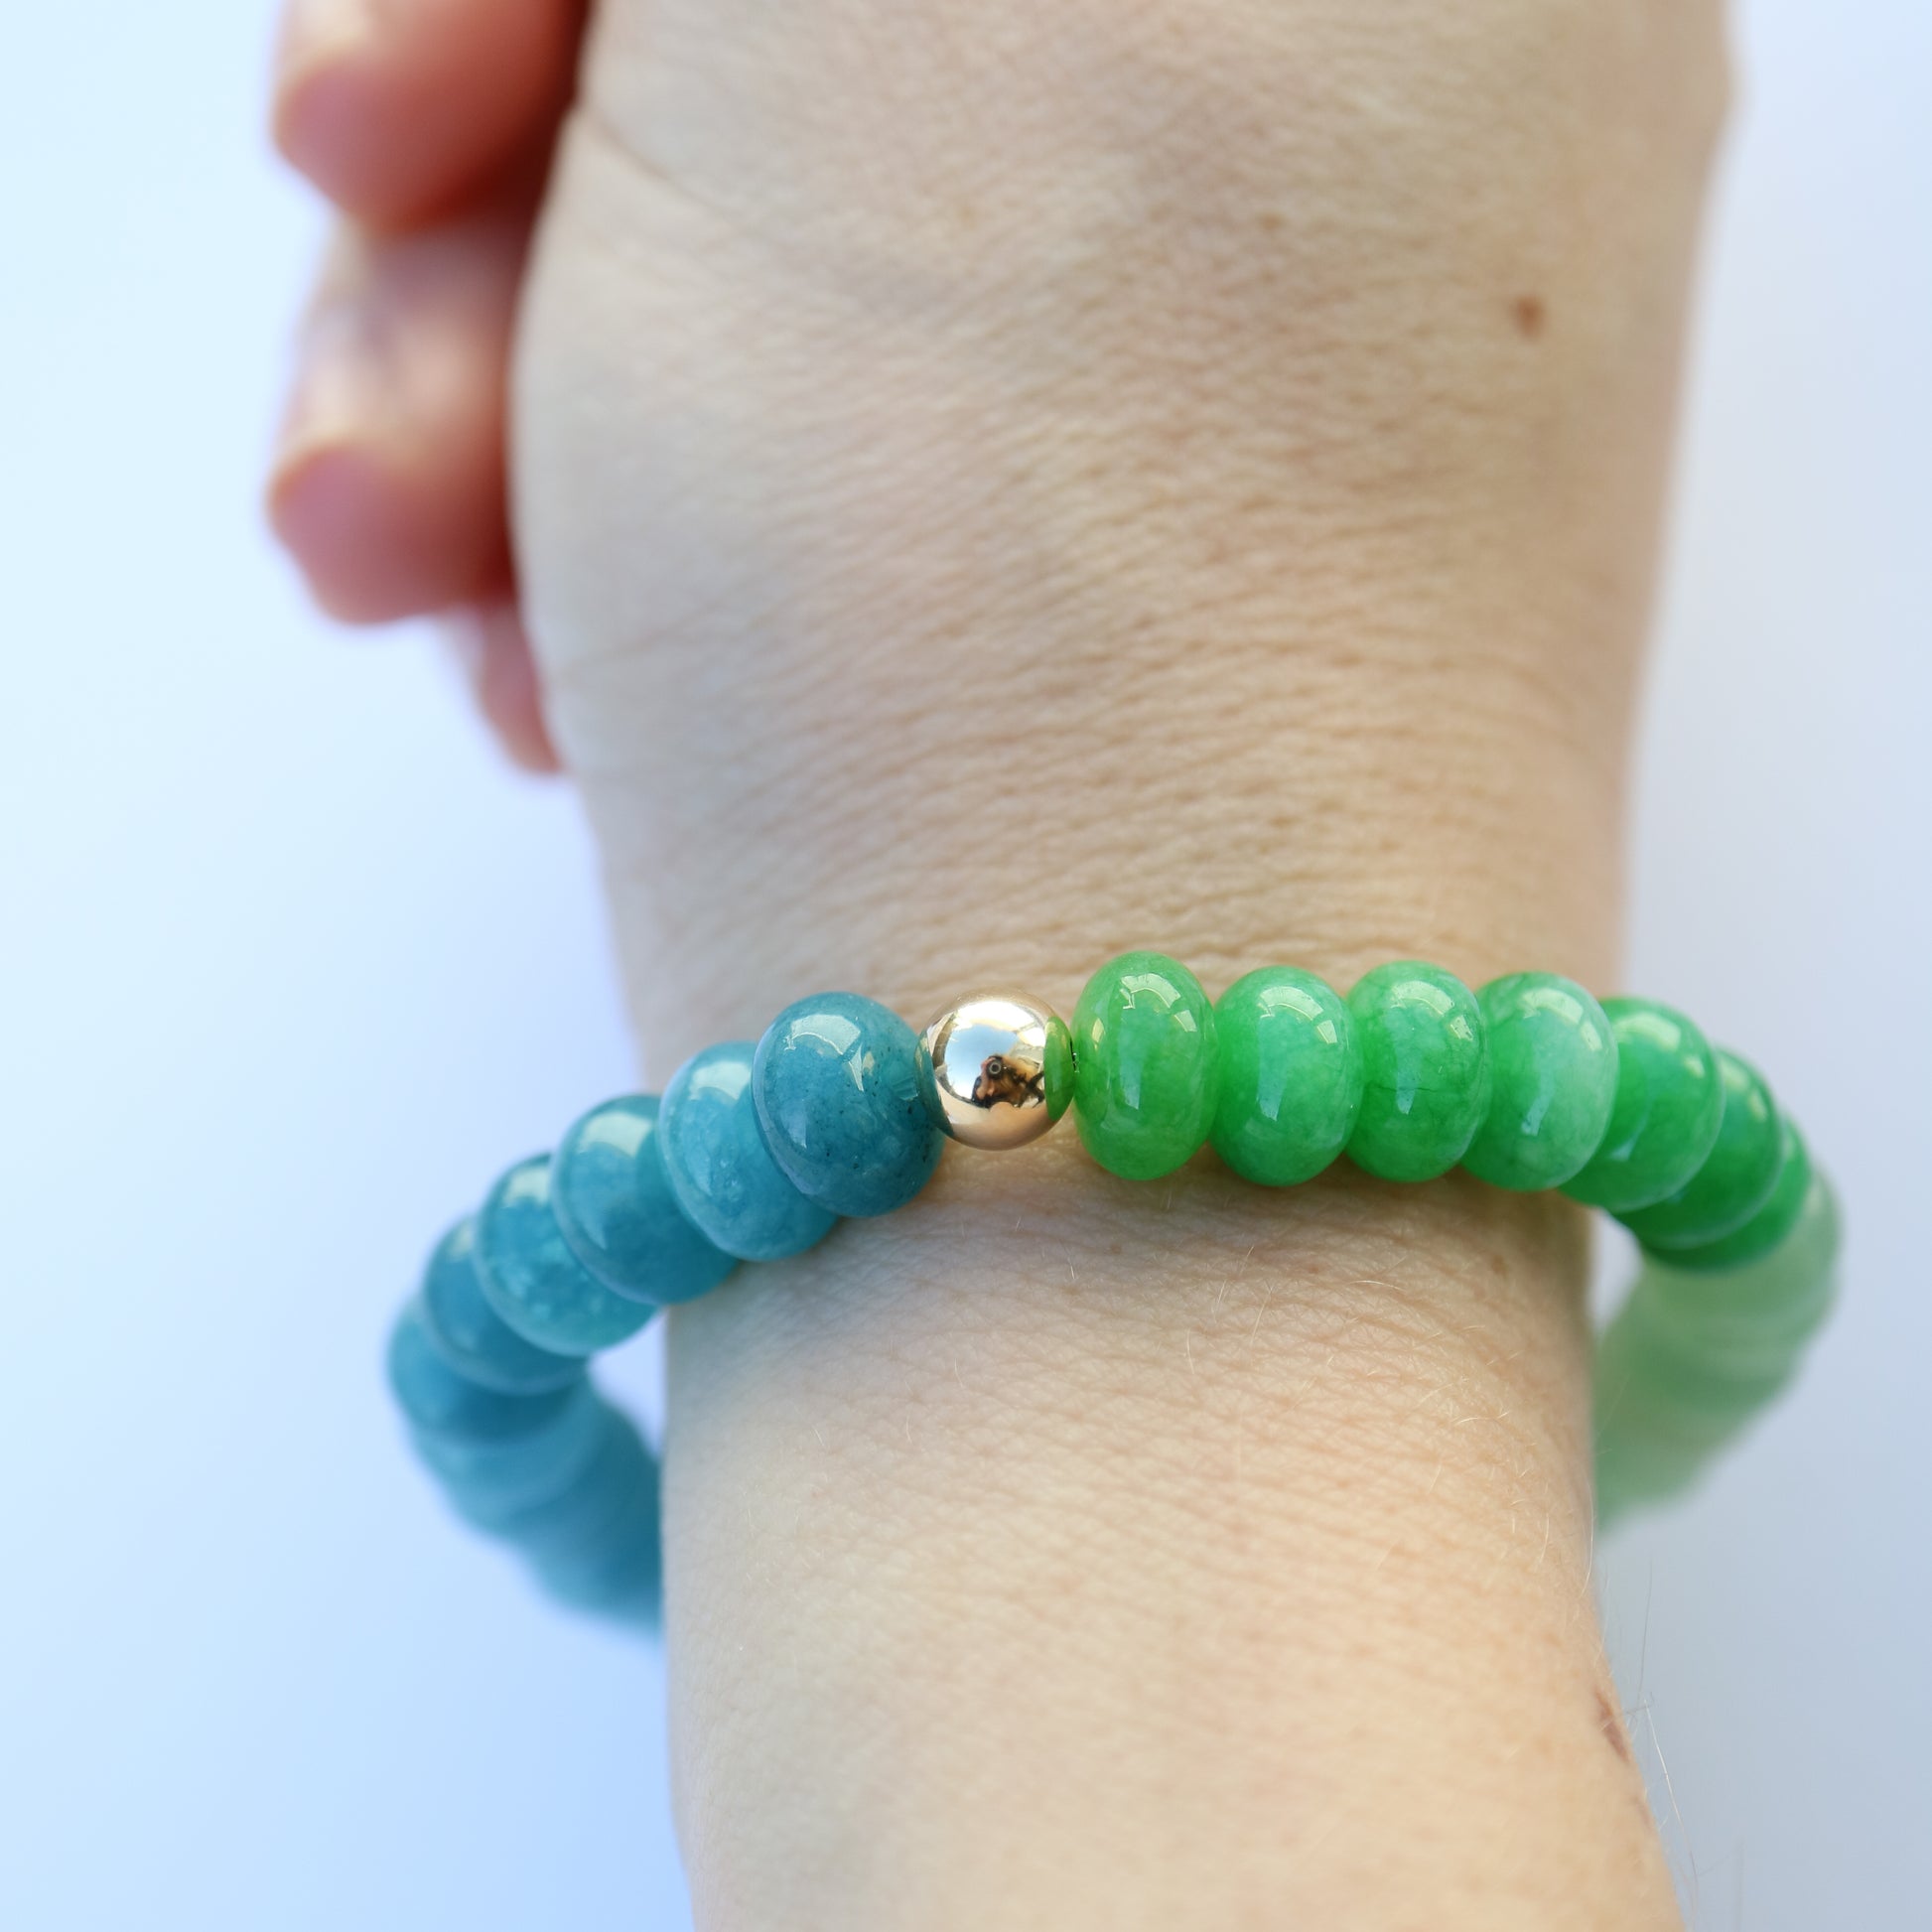 Ombré colour natural gemstone bead bracelet